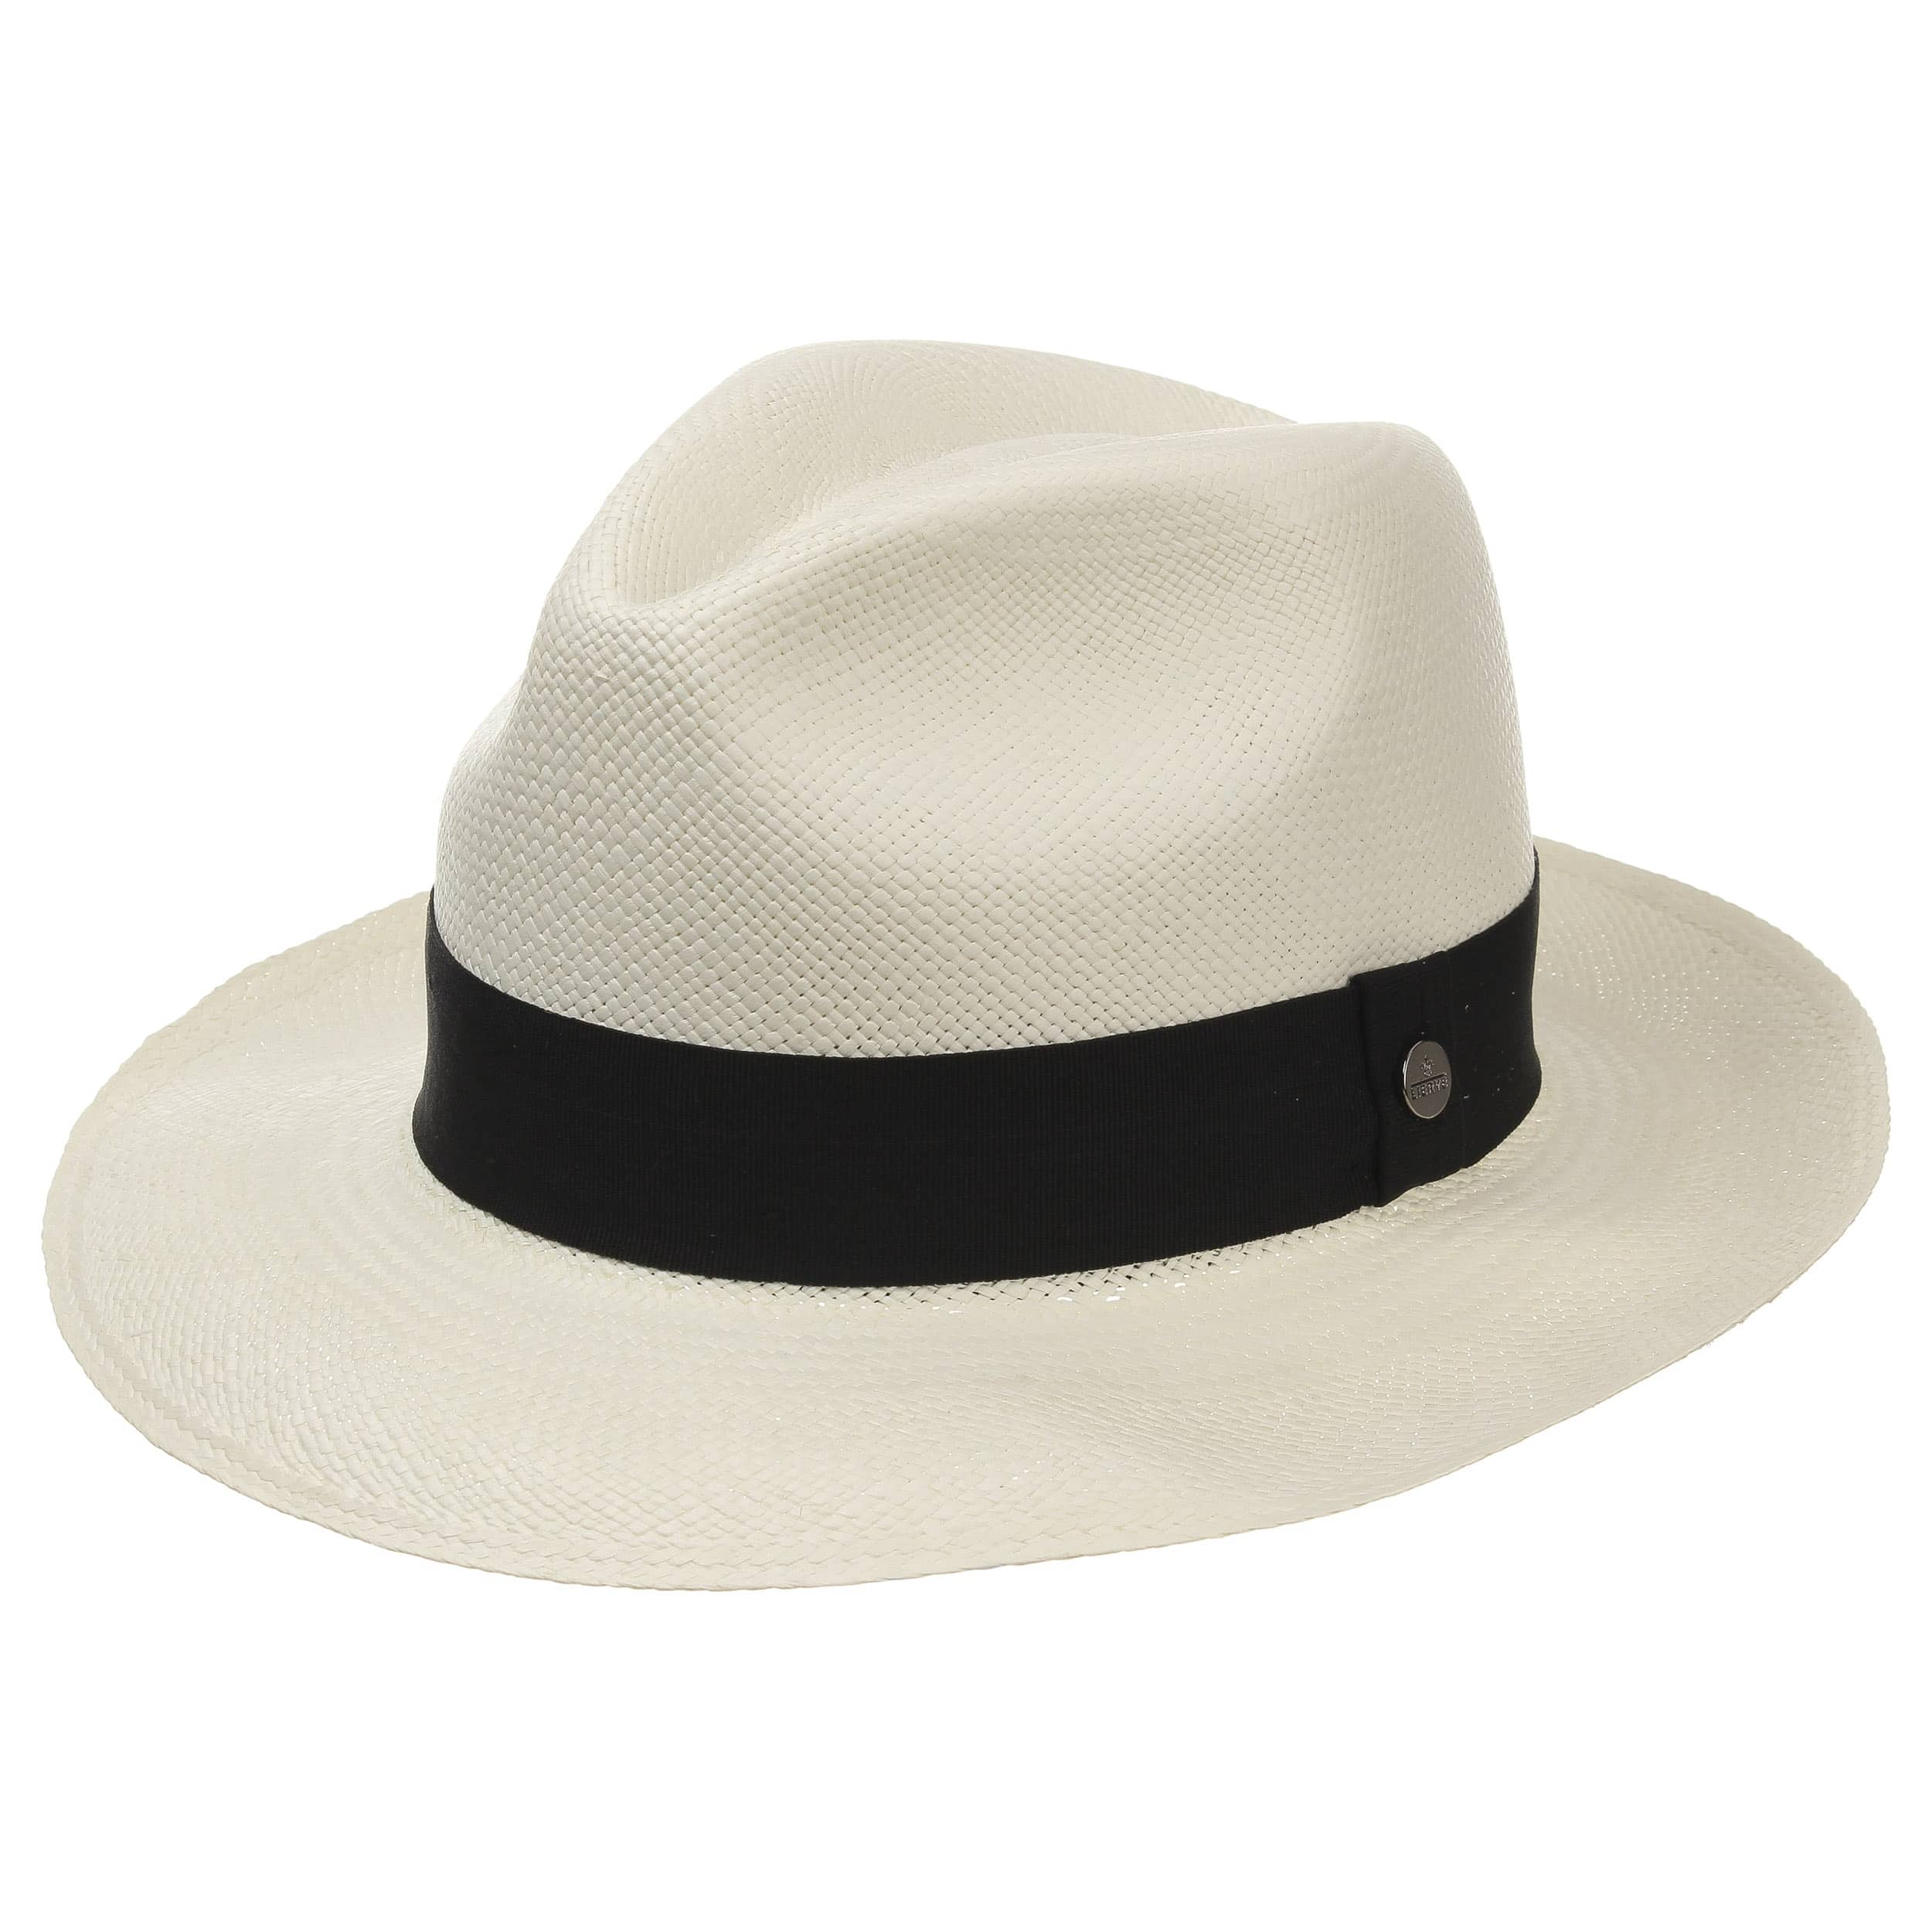 Classic Panama Hat by Lierys EUR 99 95 gt Hats caps beanies shop